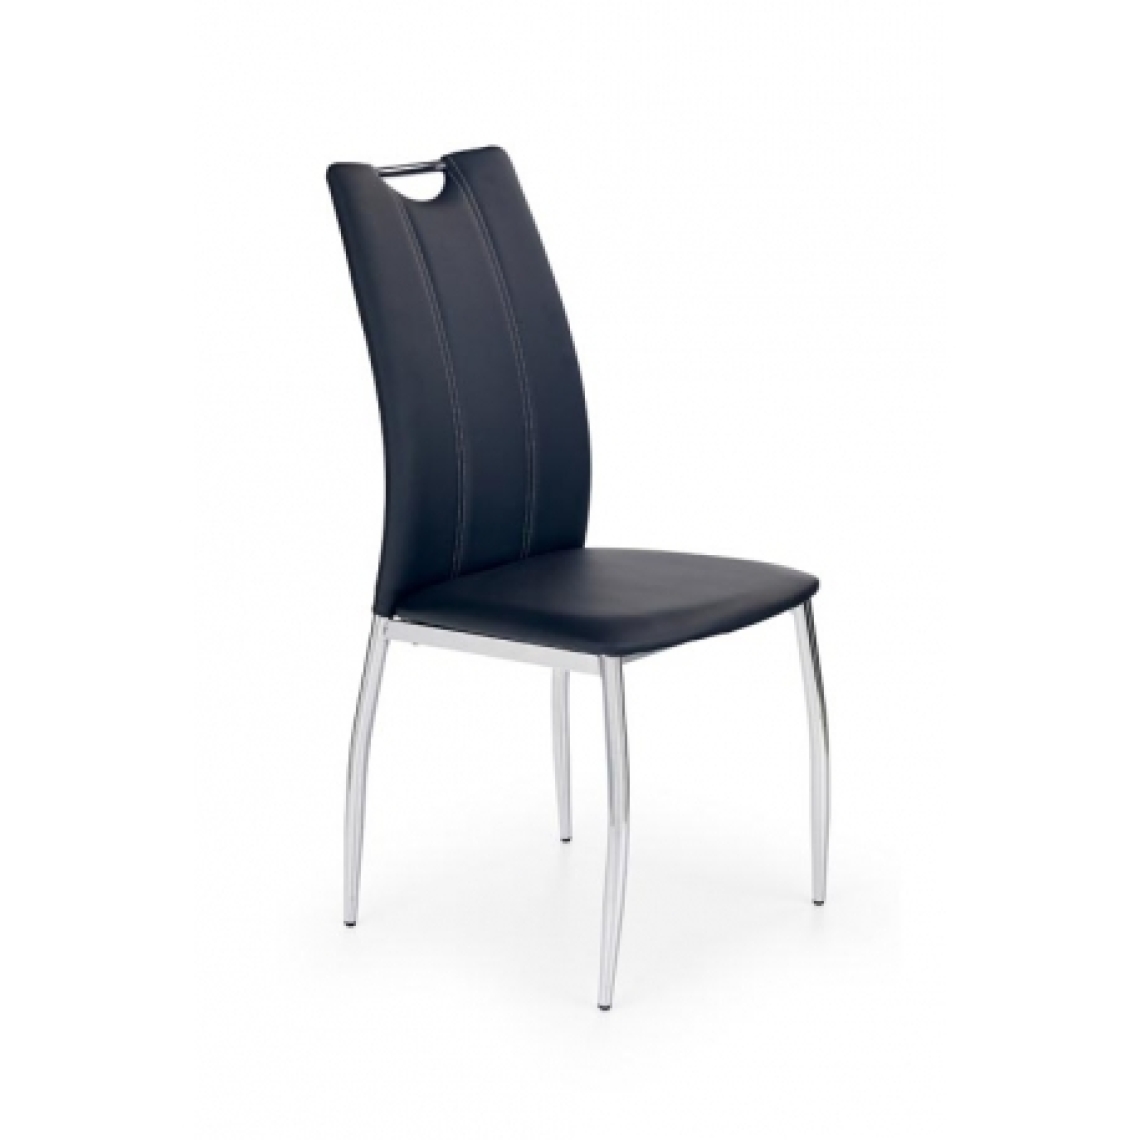 Carellia - BERTRAND lot de 4 chaises design - Noir - Chaises